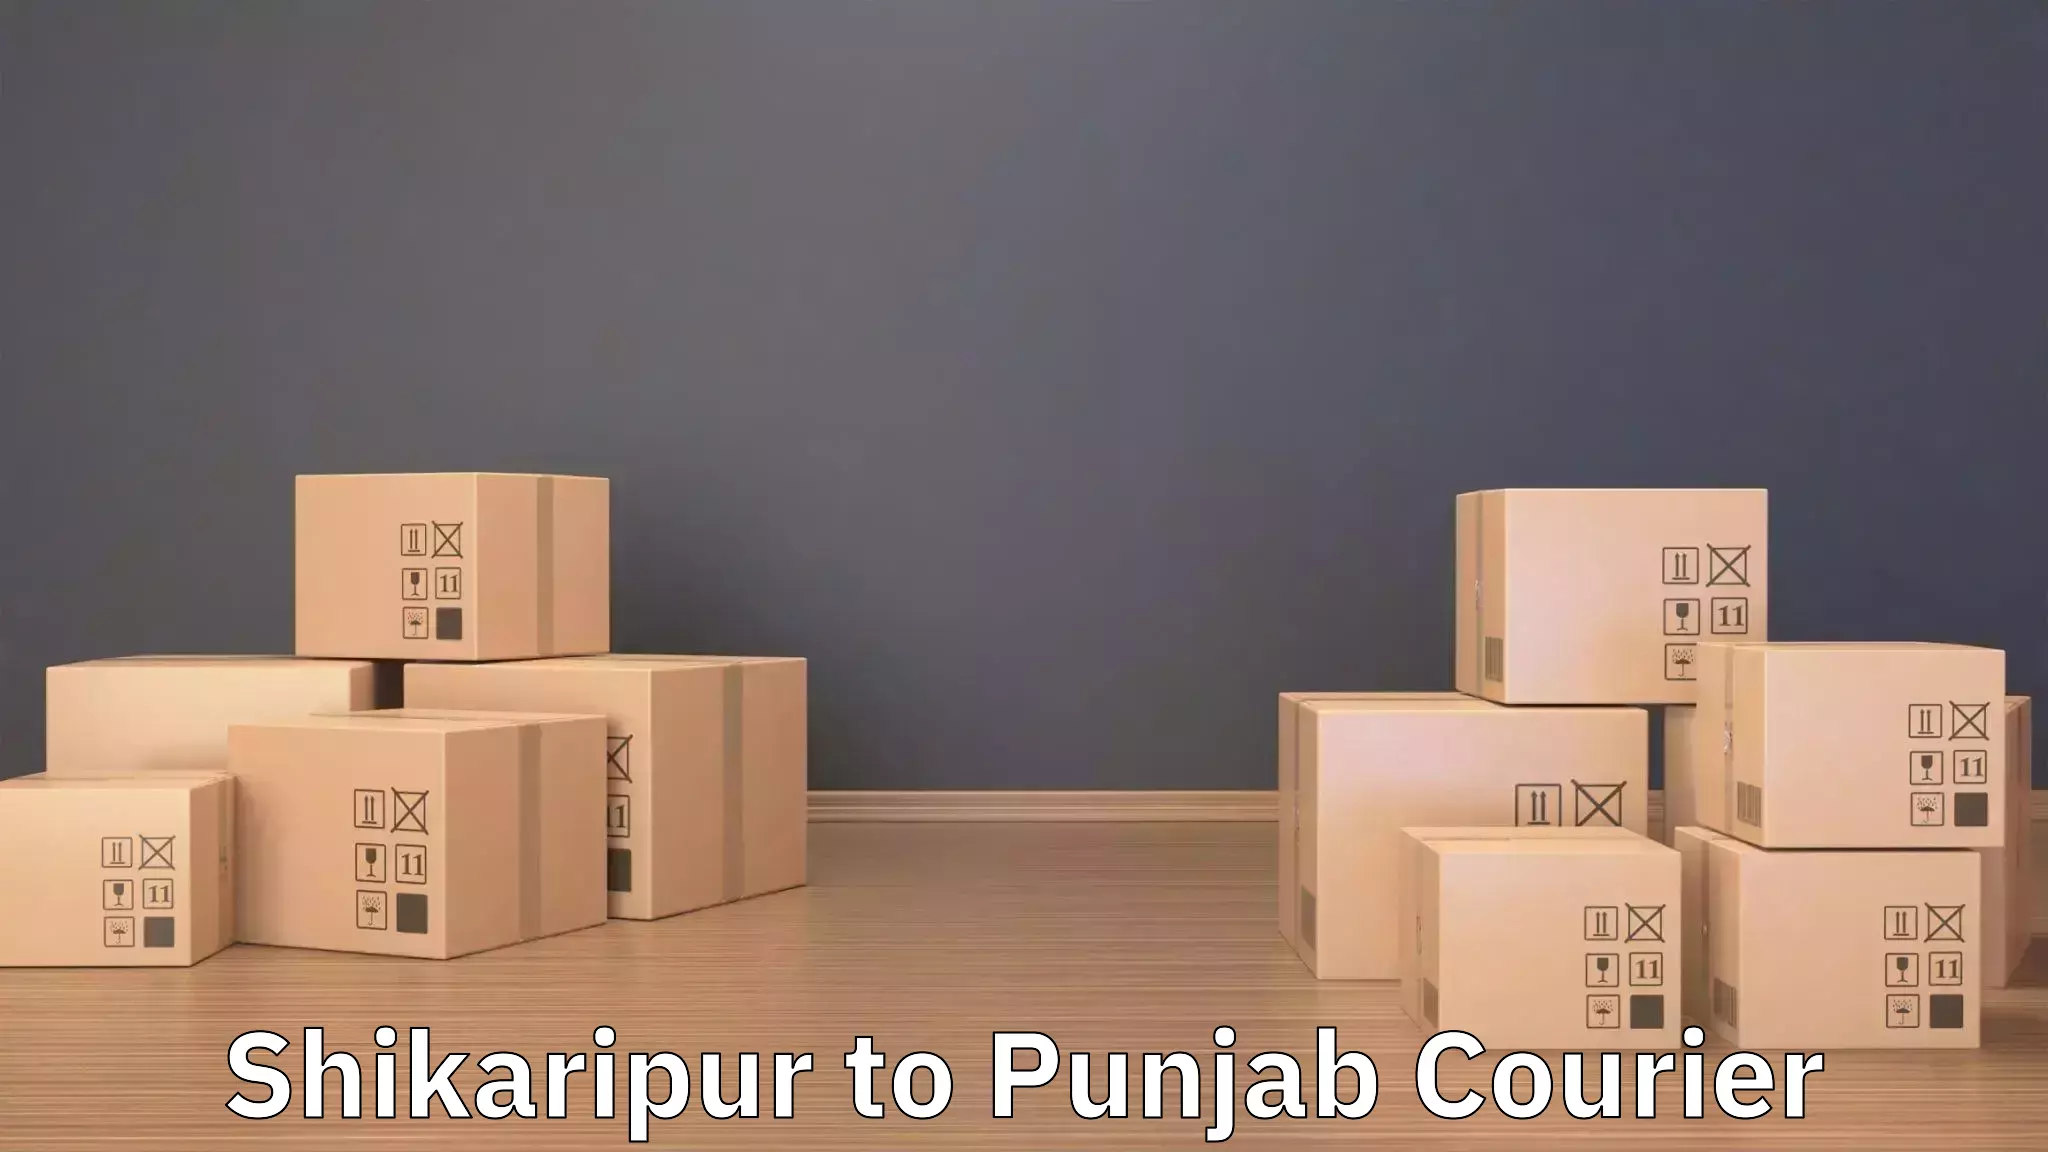 Furniture transport solutions Shikaripur to Punjab